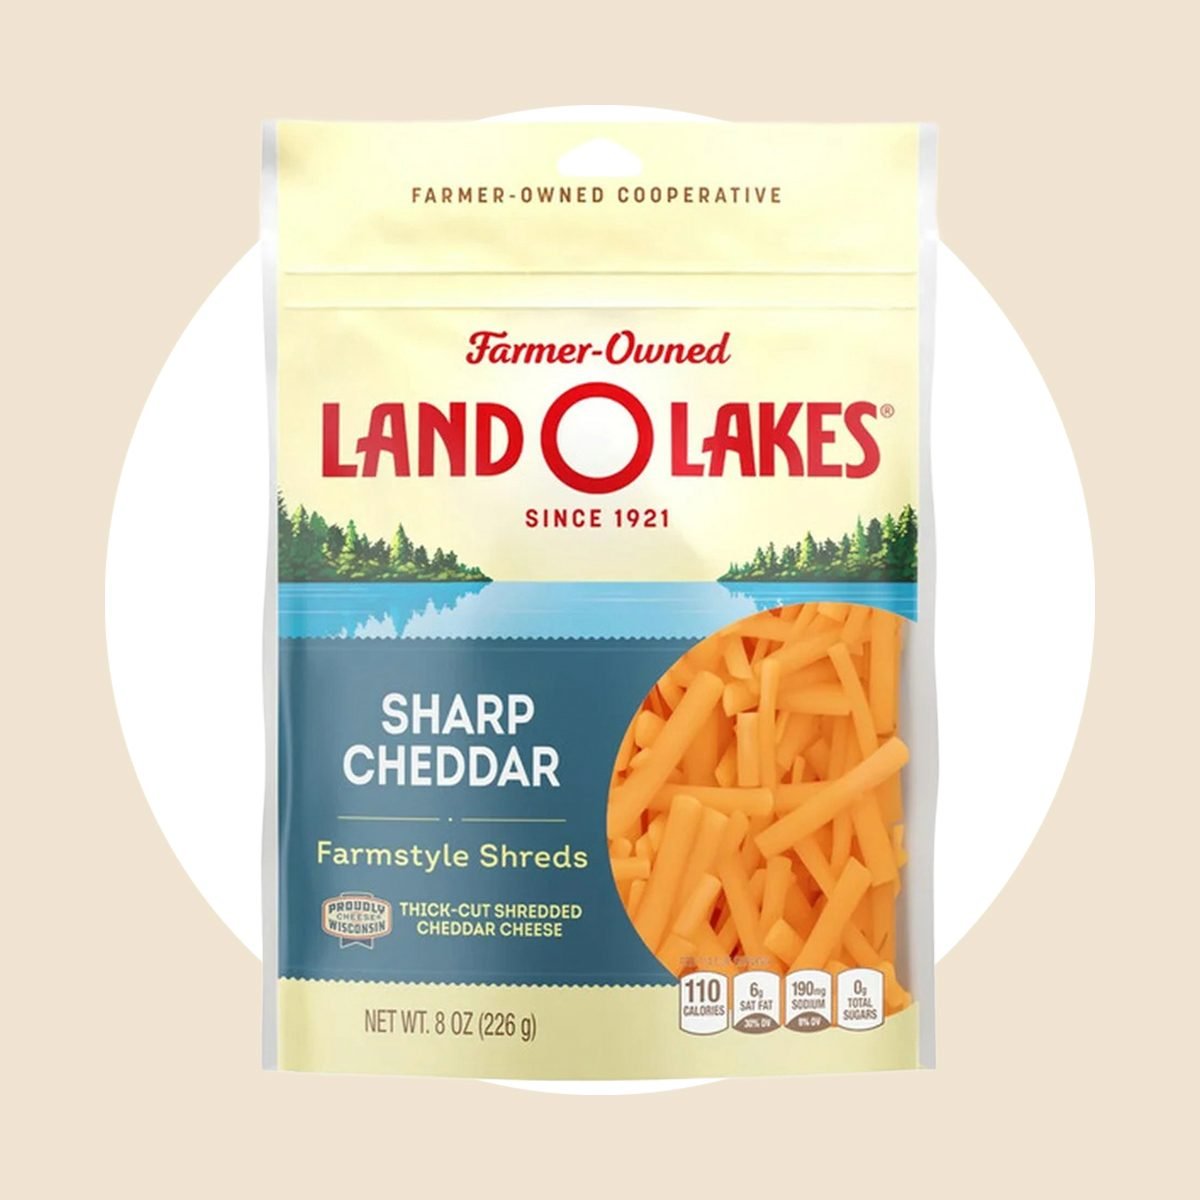 Land O Lakes锋利的切达奶酪丝